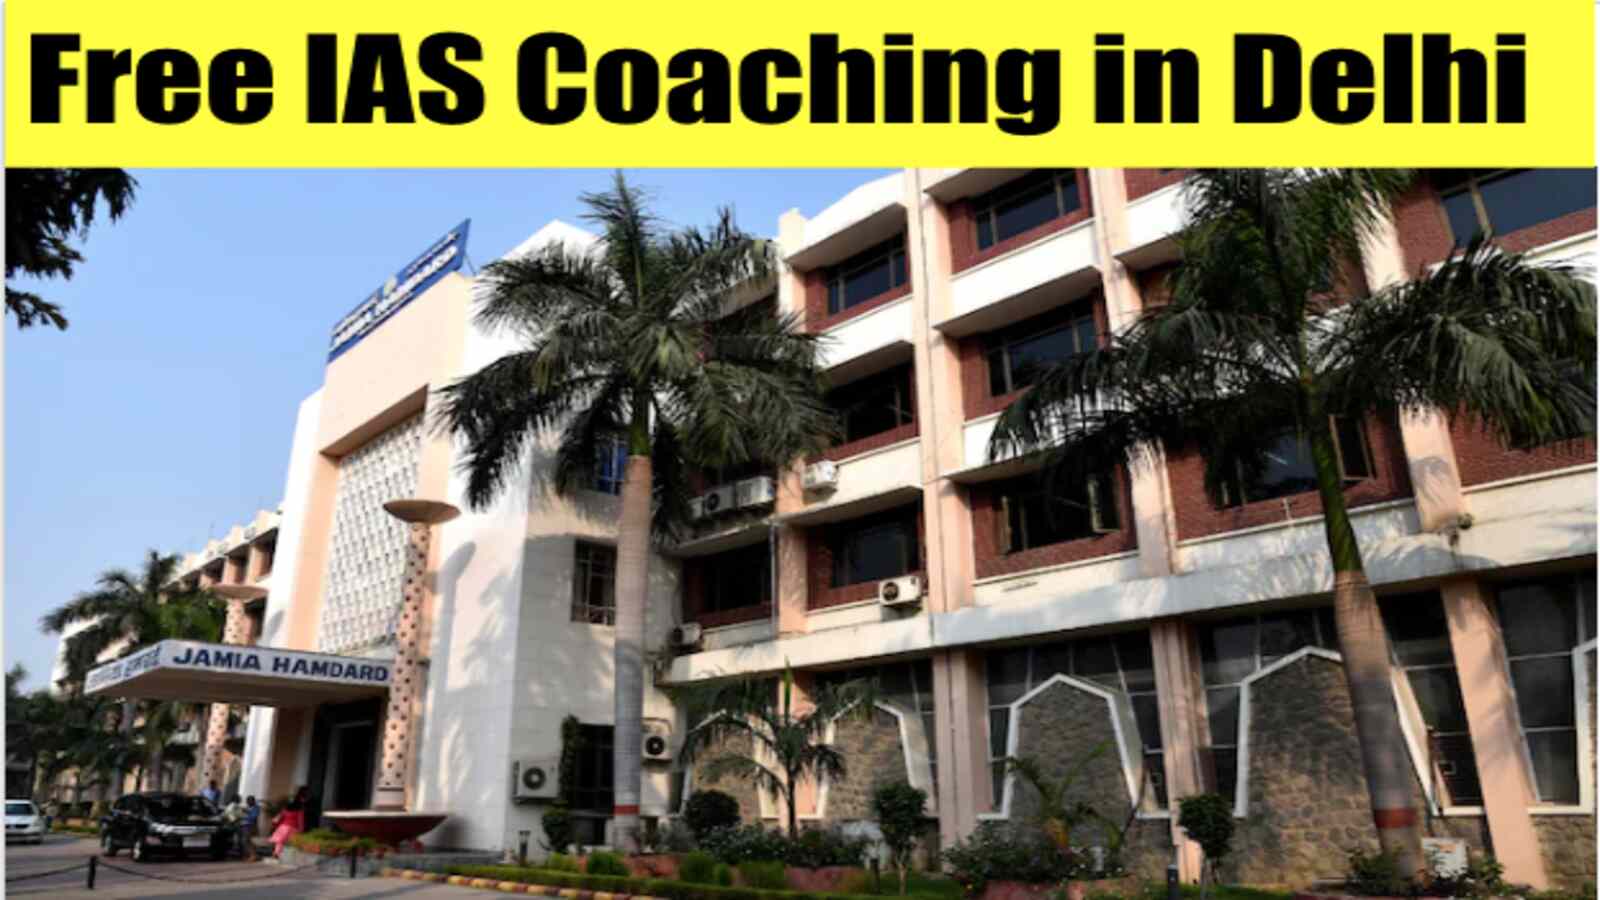 Jamia Hamdard Residential Coaching Free IAS Coaching in Delhi